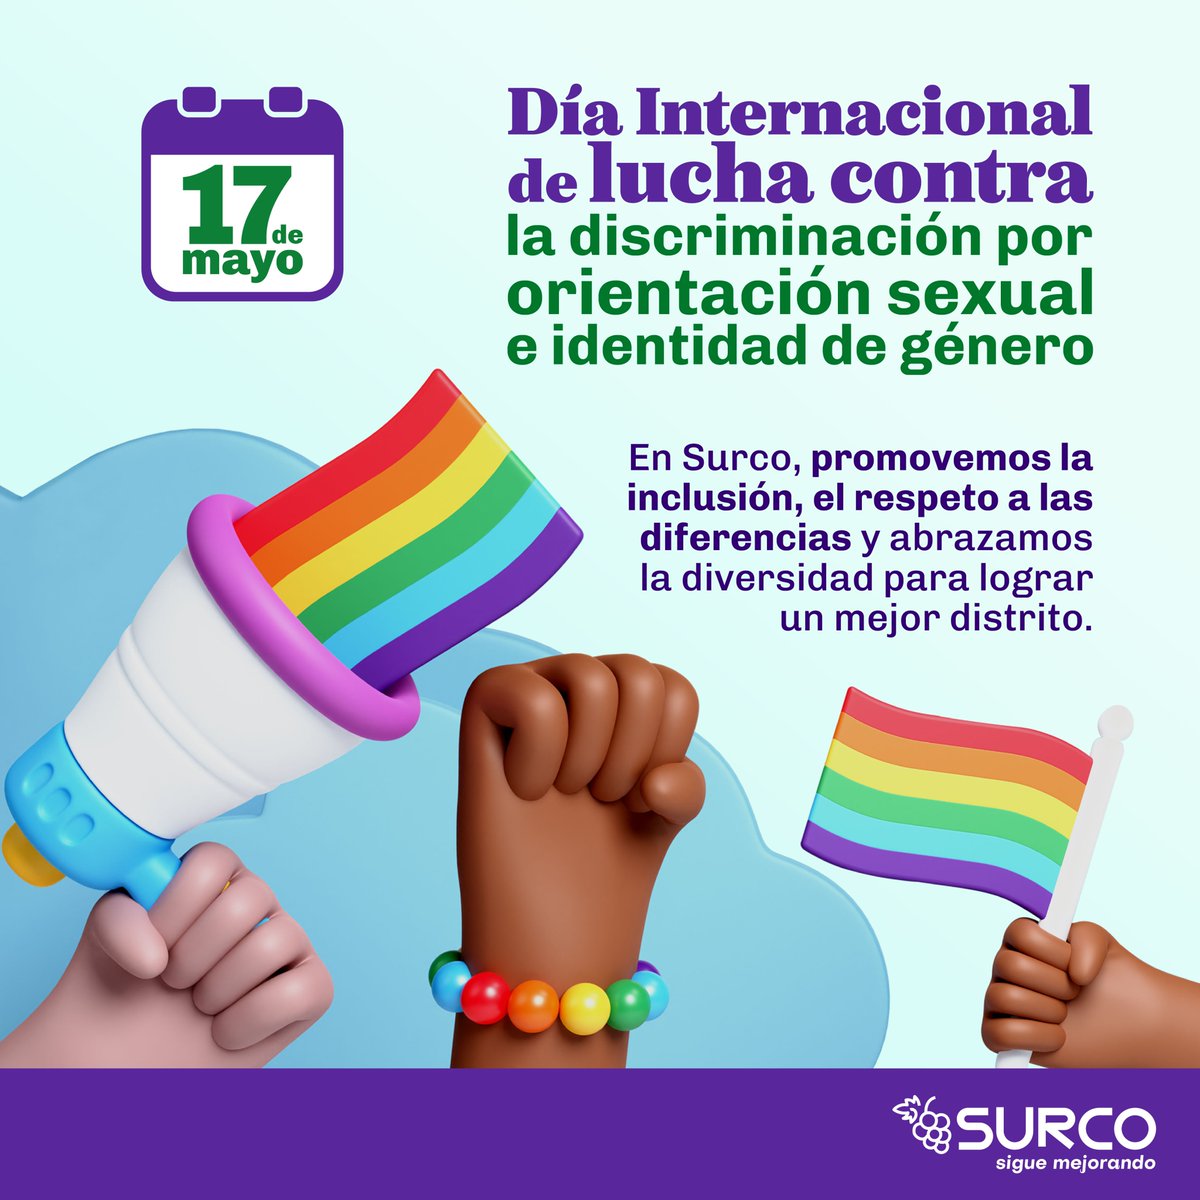 Por un futuro de diálogo inclusivo, hoy nos unimos a la conmemoración del Día Internacional de la Lucha contra la Discriminación por Orientación Sexual e Identidad de Género. #SurcoSigueMejorando #Surco #Diversidad #DiaContralaLGTBIfobia